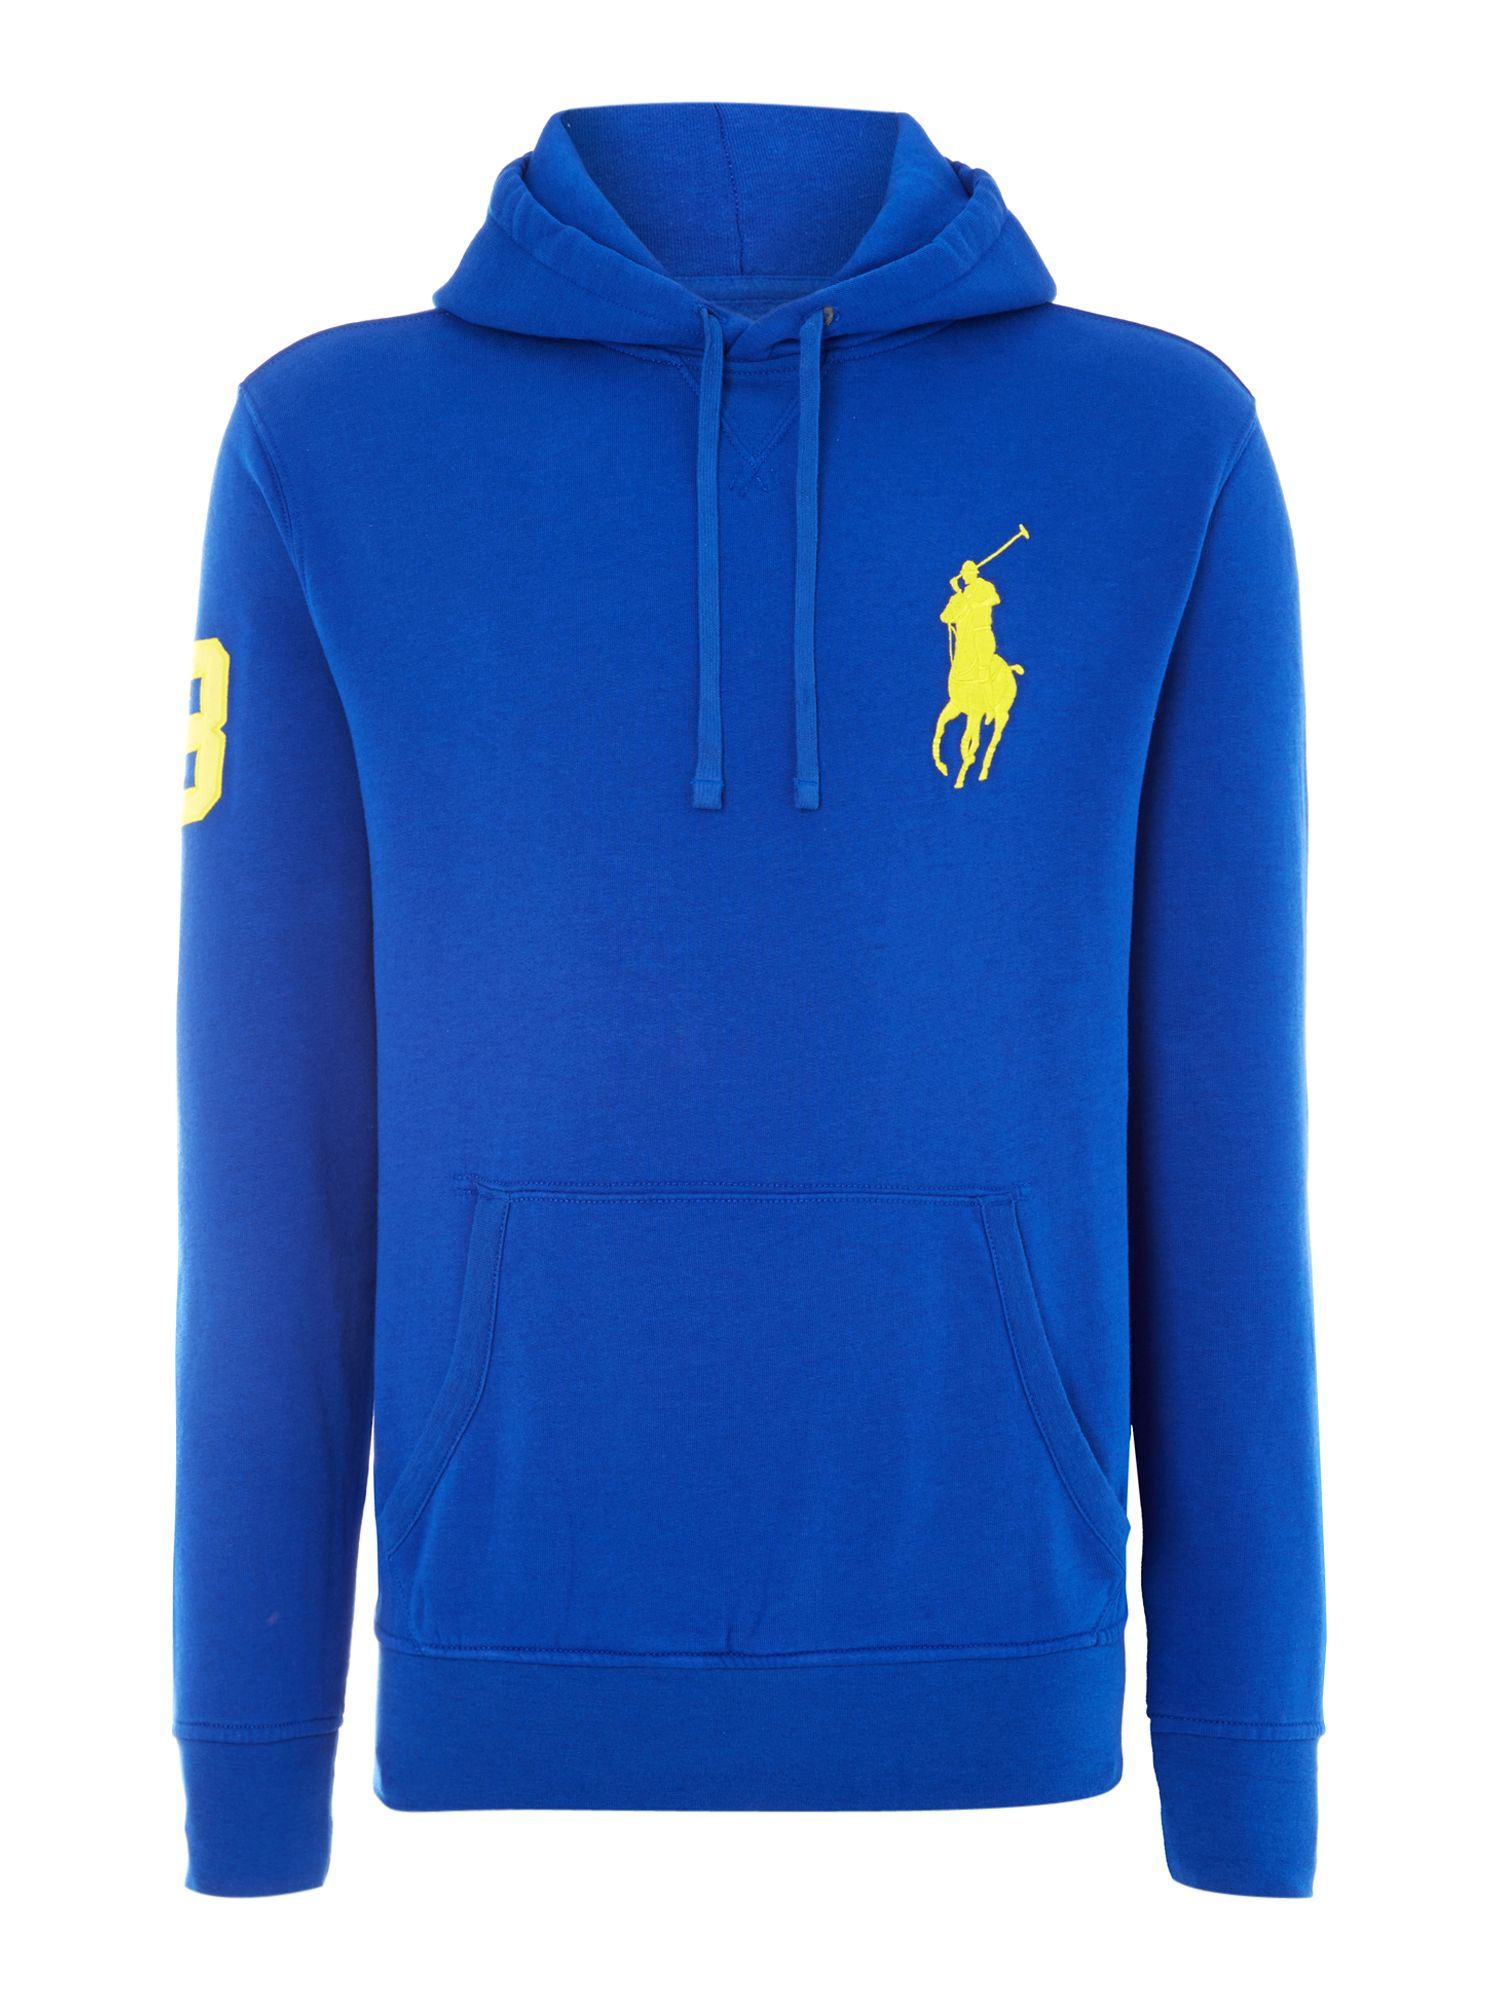 Polo ralph lauren Big Pony Player Fleece Hooded Sweatshirt in Blue for ...